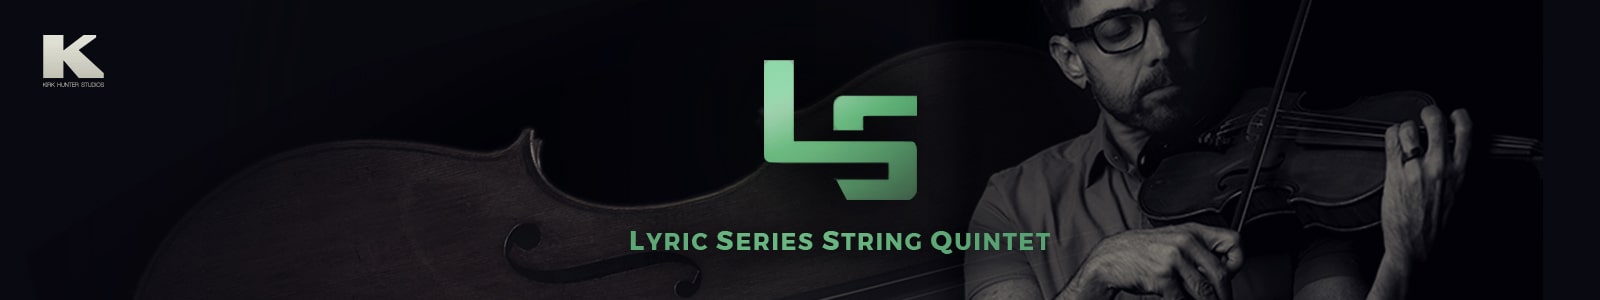 lyric series string quintet